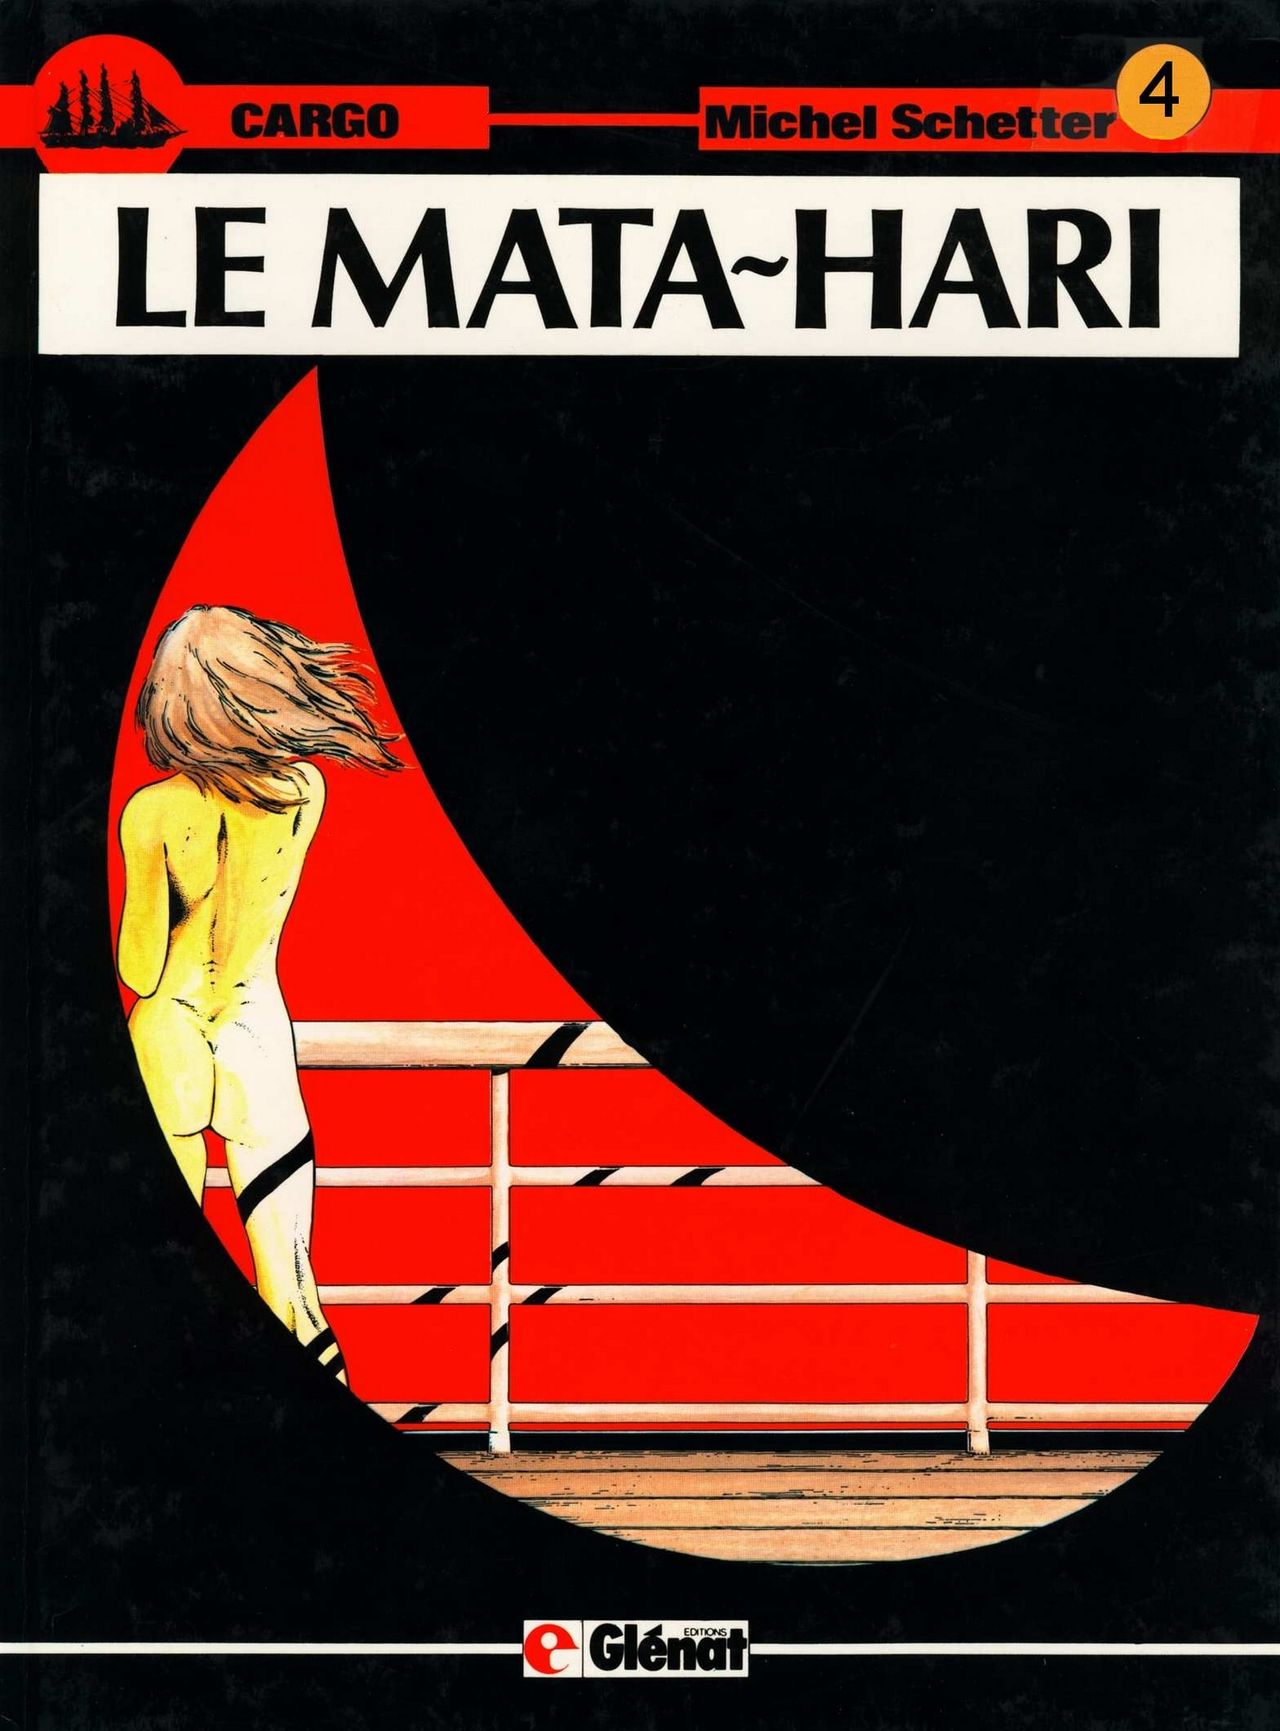 Michel Schetter - Cargo 4 - Le Mata-Hari